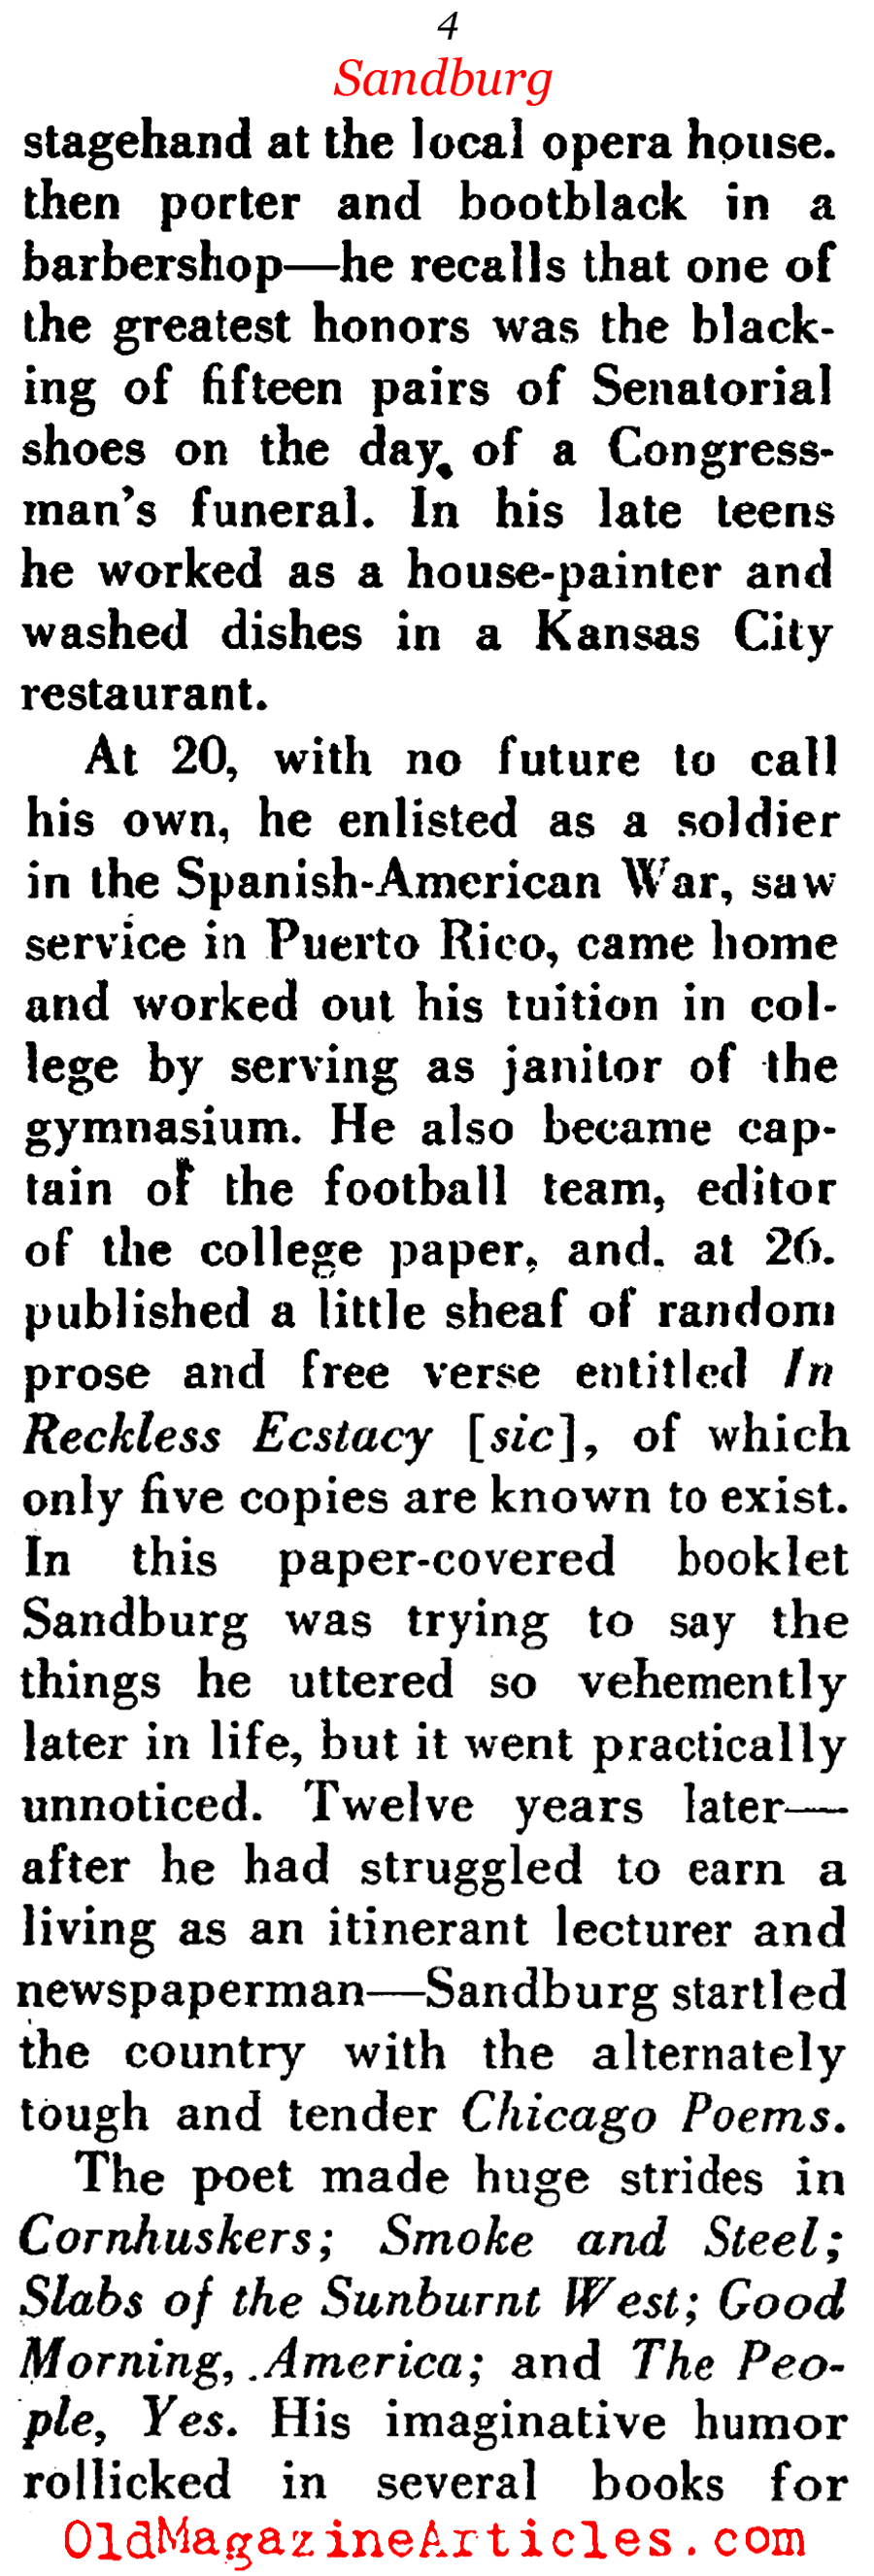 Carl Sandburg at 70 ('48 Magazine)